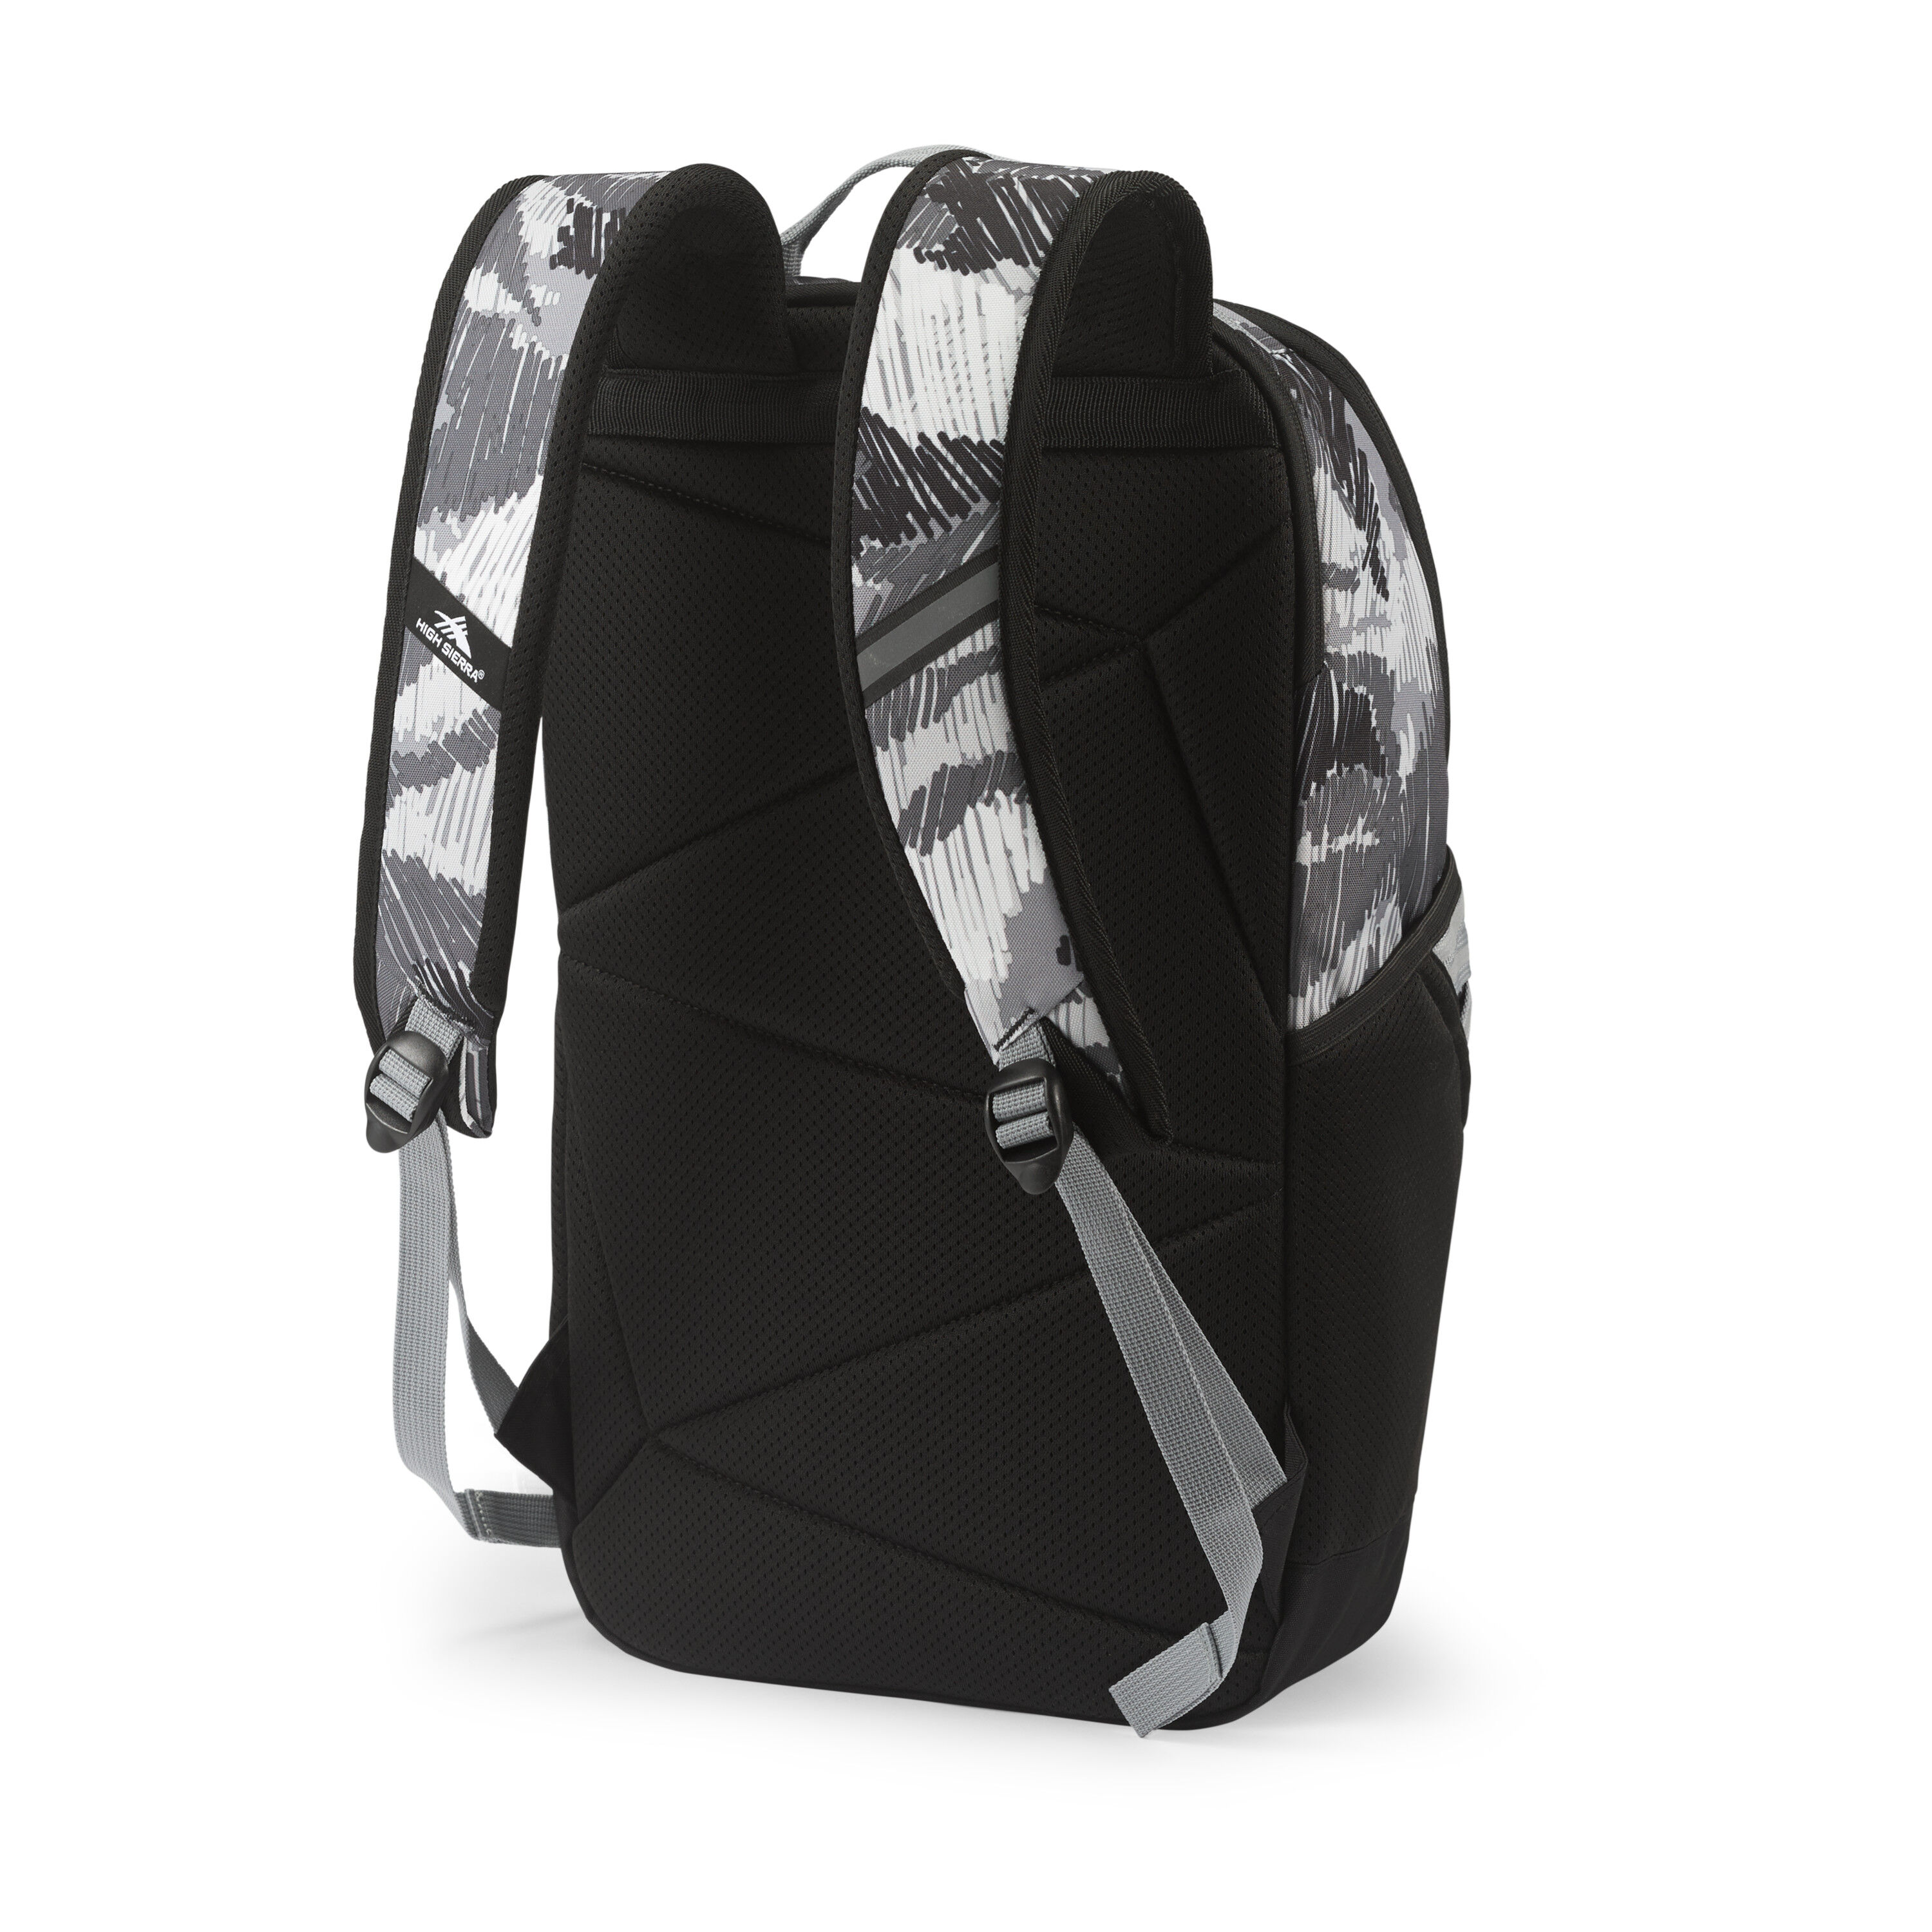 Buy Swoop SG Backpack for USD 23.99 | High Sierra